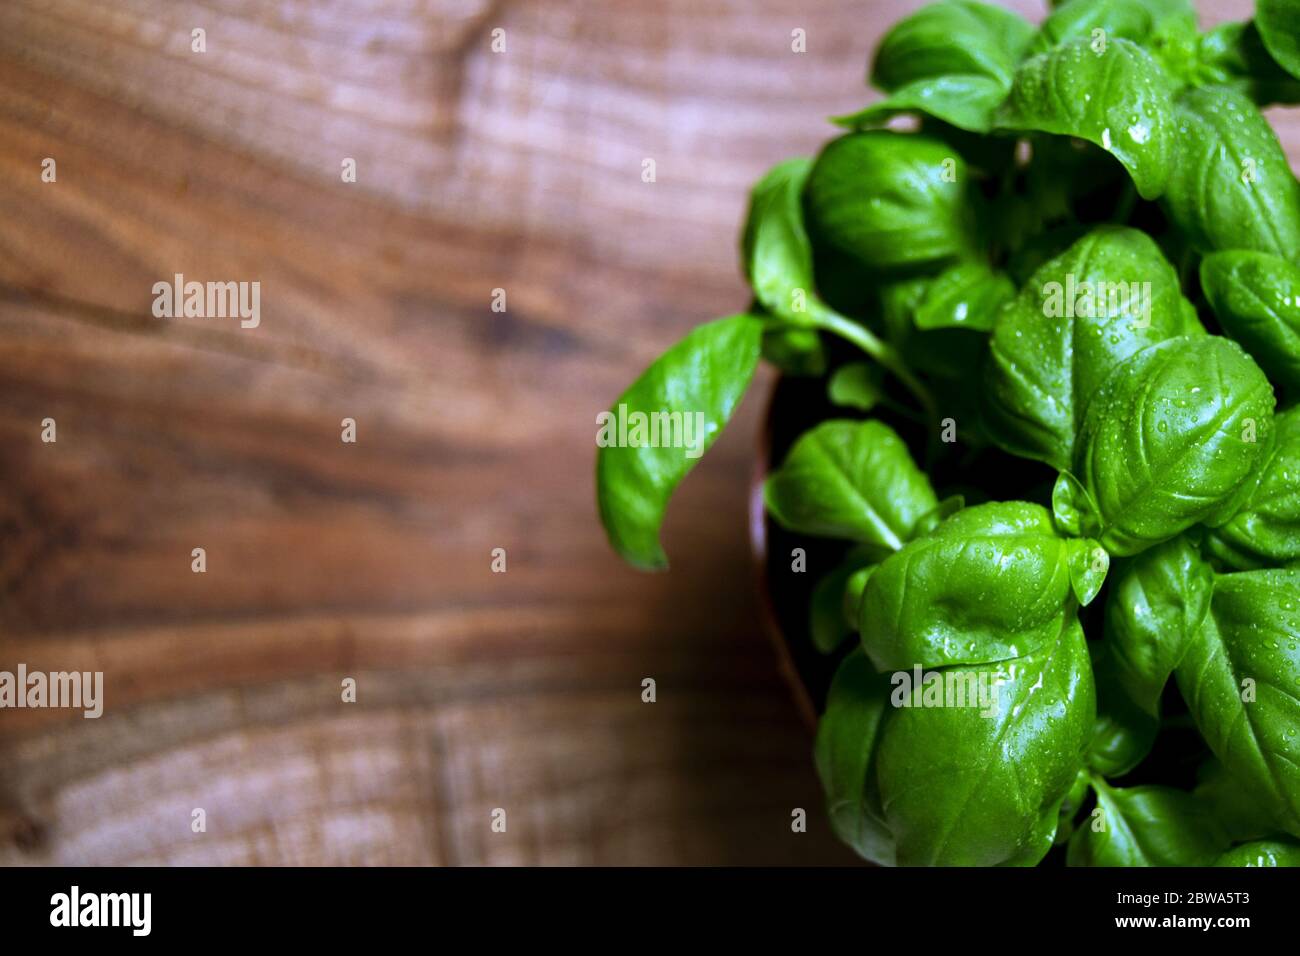 Feuilles vertes de basilic génovois (Ocimum basilicum) herbe culinaire utilisée pour la sauce pesto génoise. Concept de cuisine italienne Banque D'Images